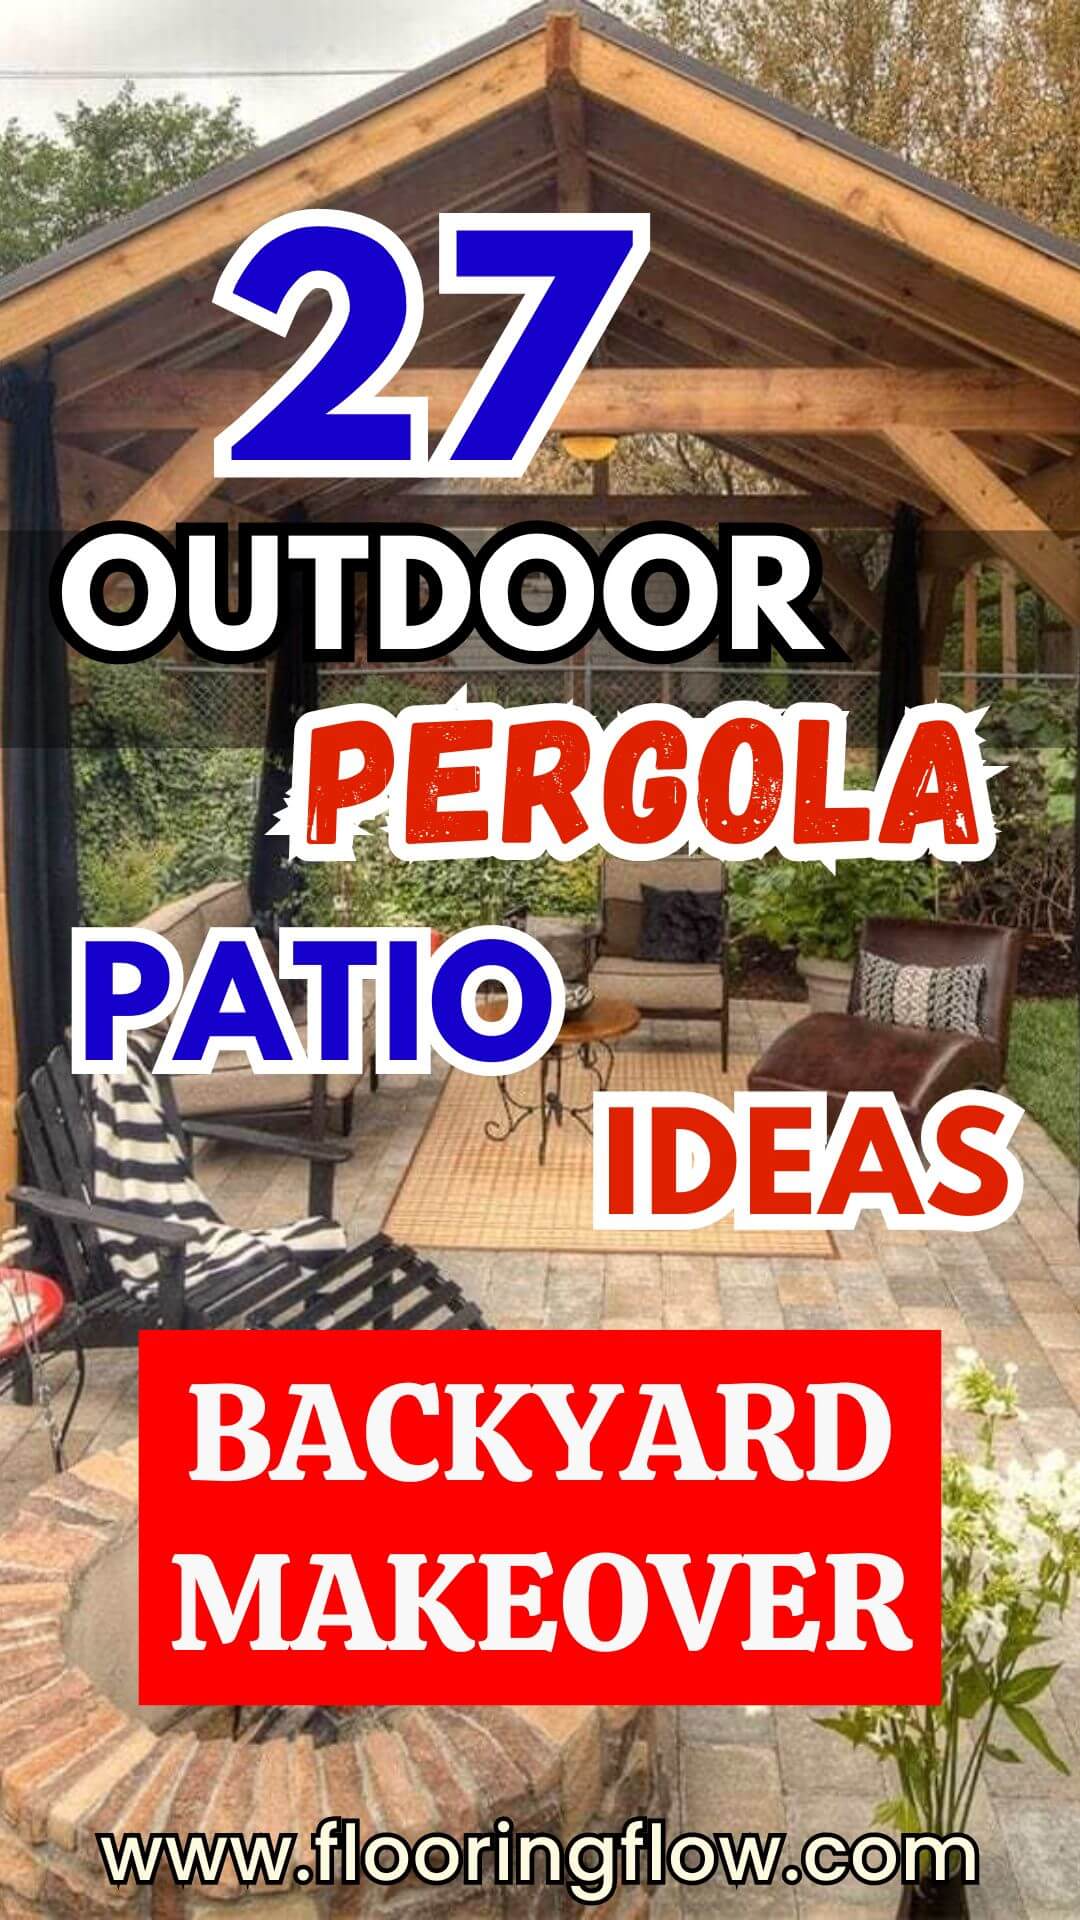 DIY Outdoor Pergola Patio Ideas for Backyard Makeover